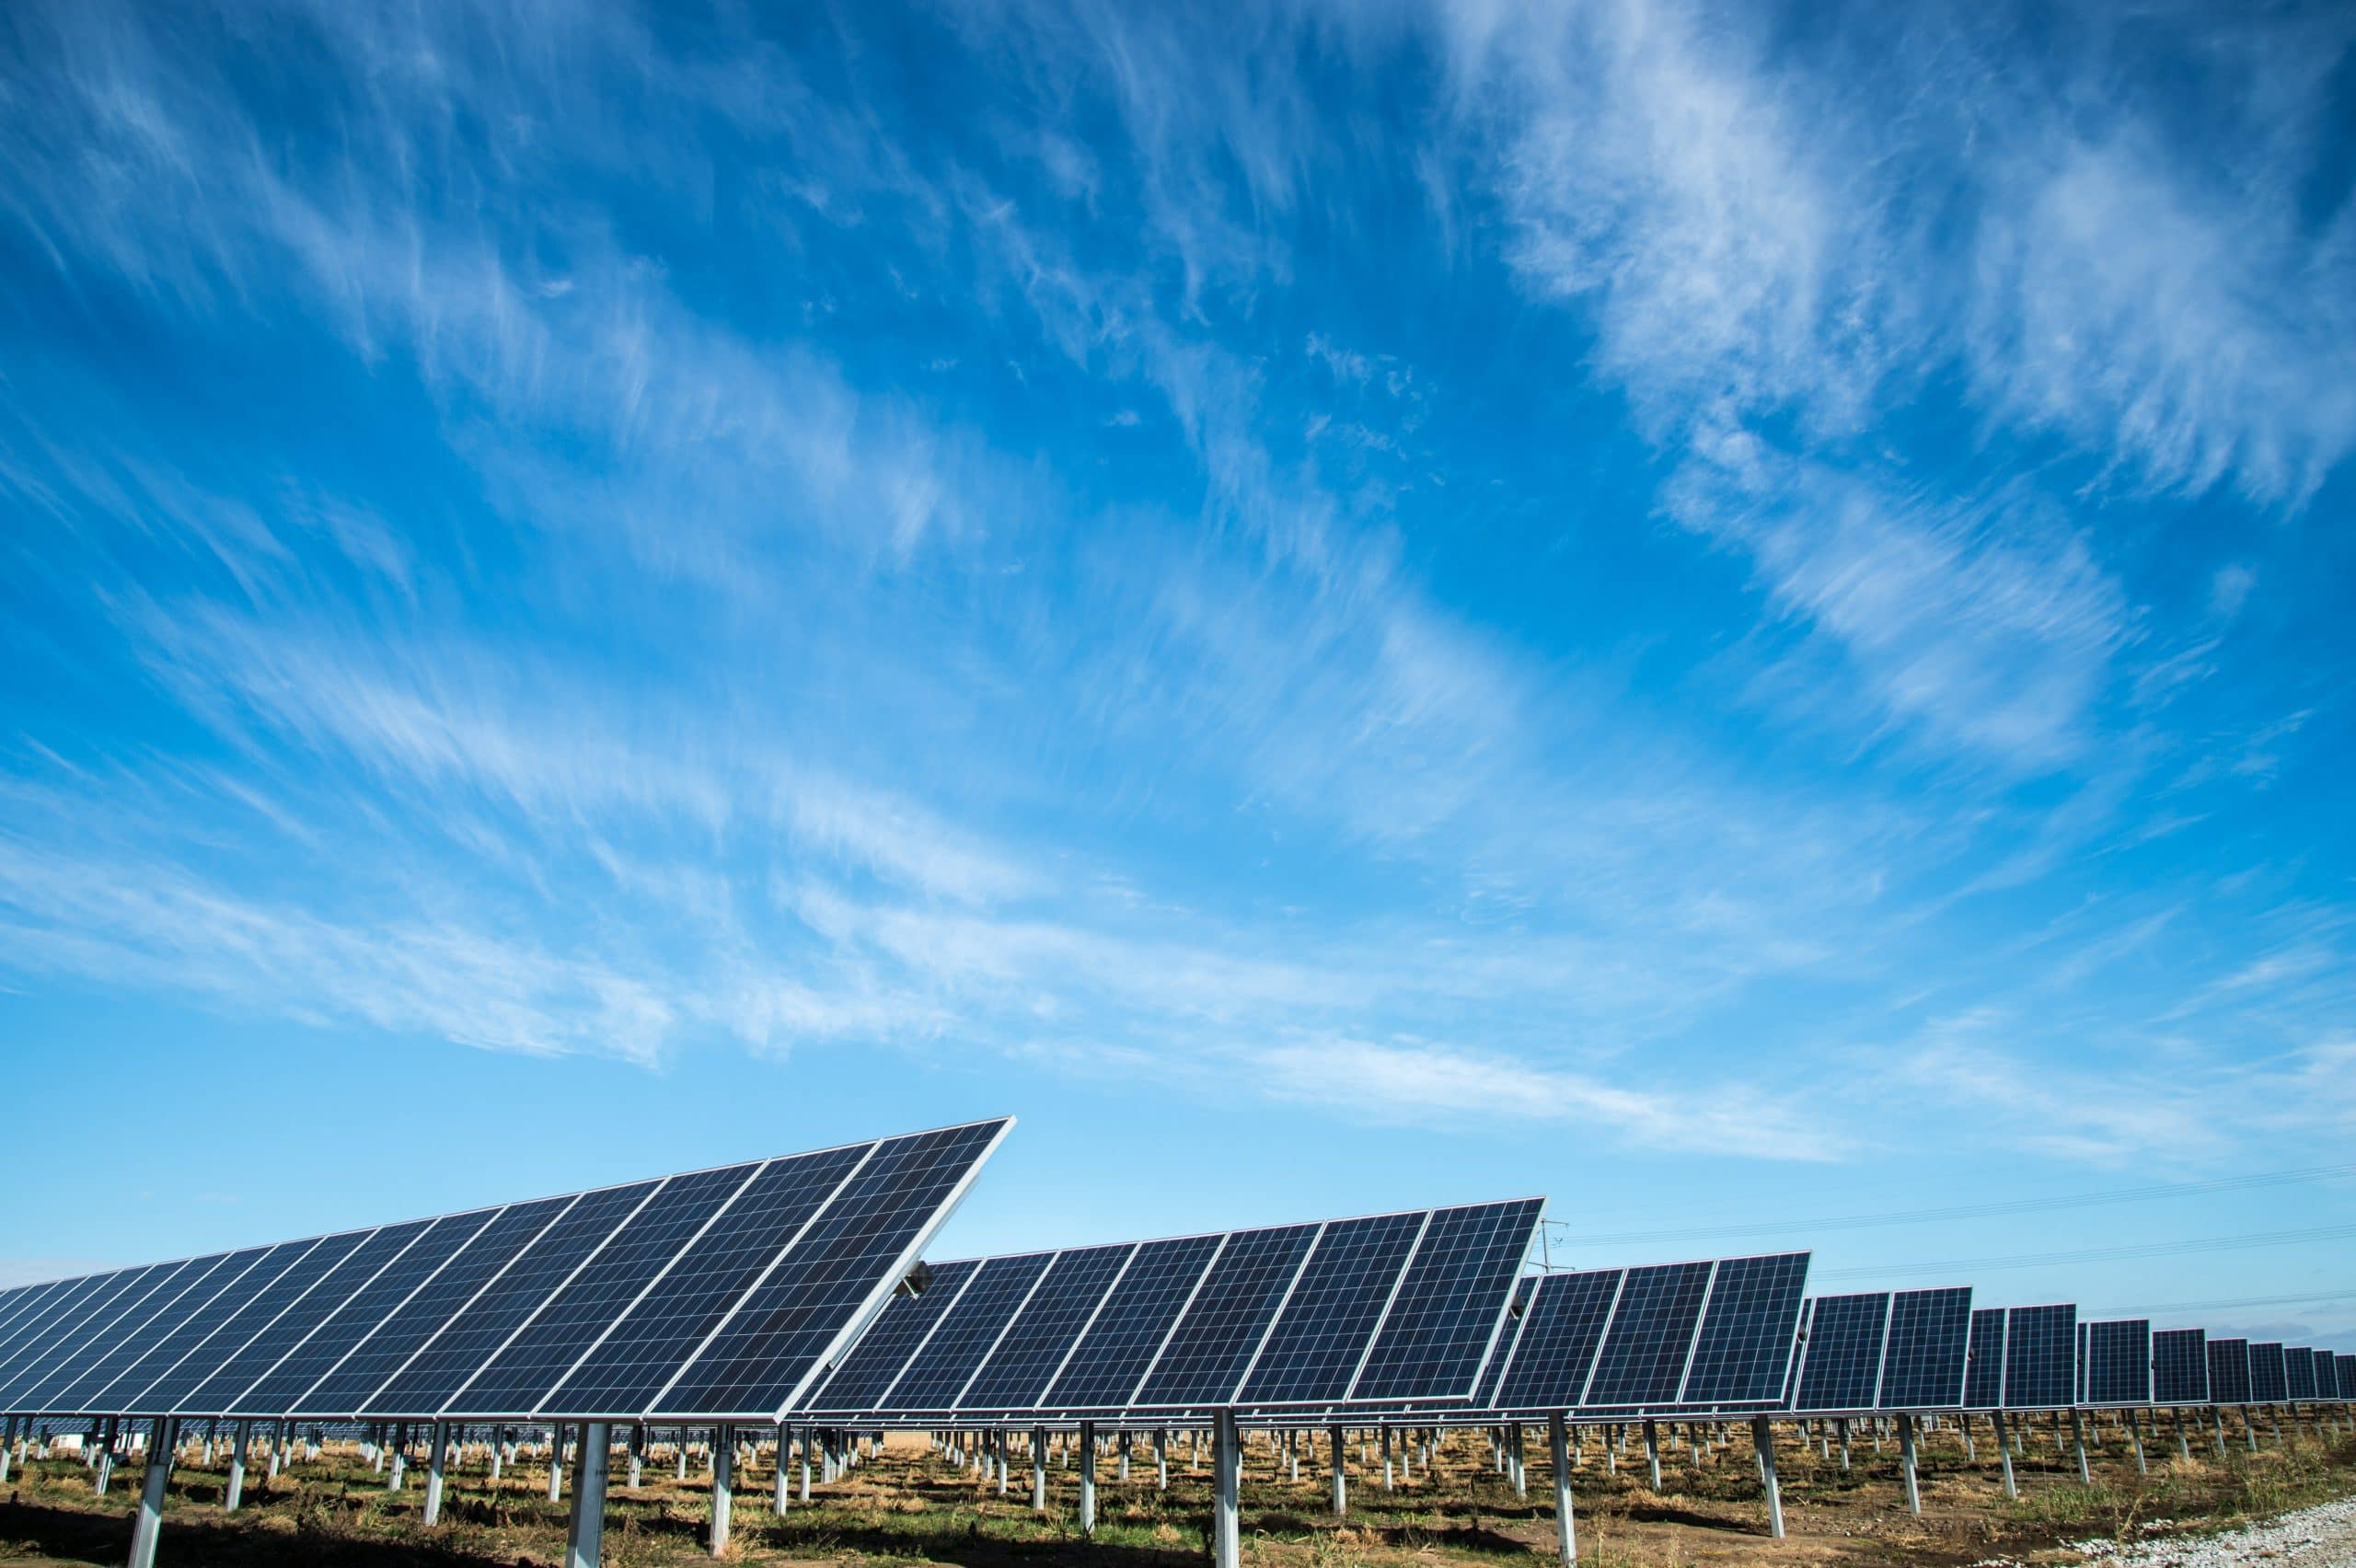 Sürdürülebilir ve doğal enerji kaynağı olan güneş panelleri görseli.